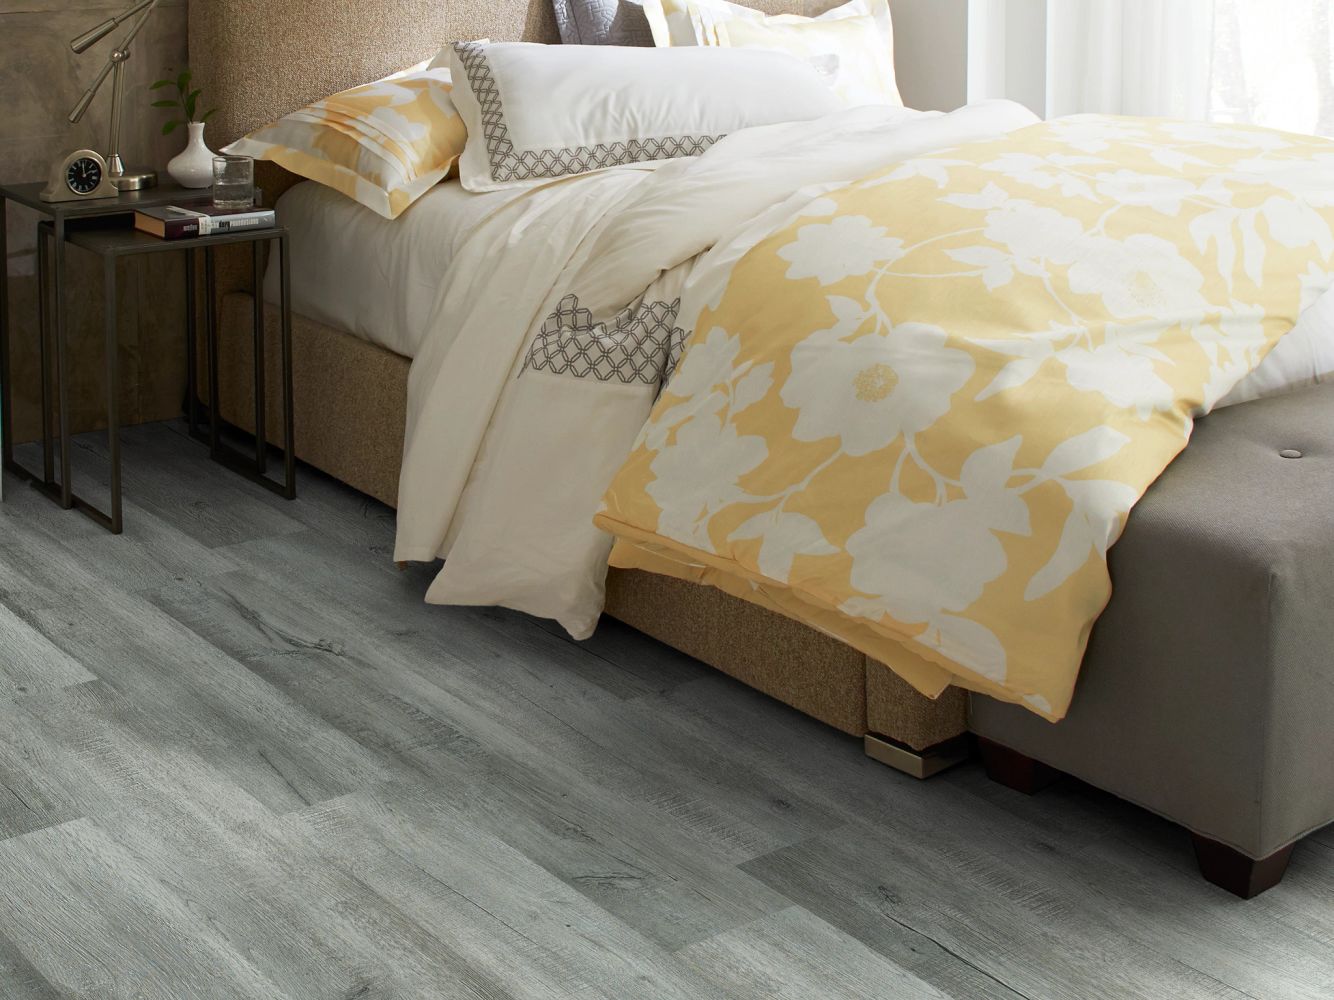 Shaw Floors Resilient Residential Prime Plank Greyed Oak 00532_0616V